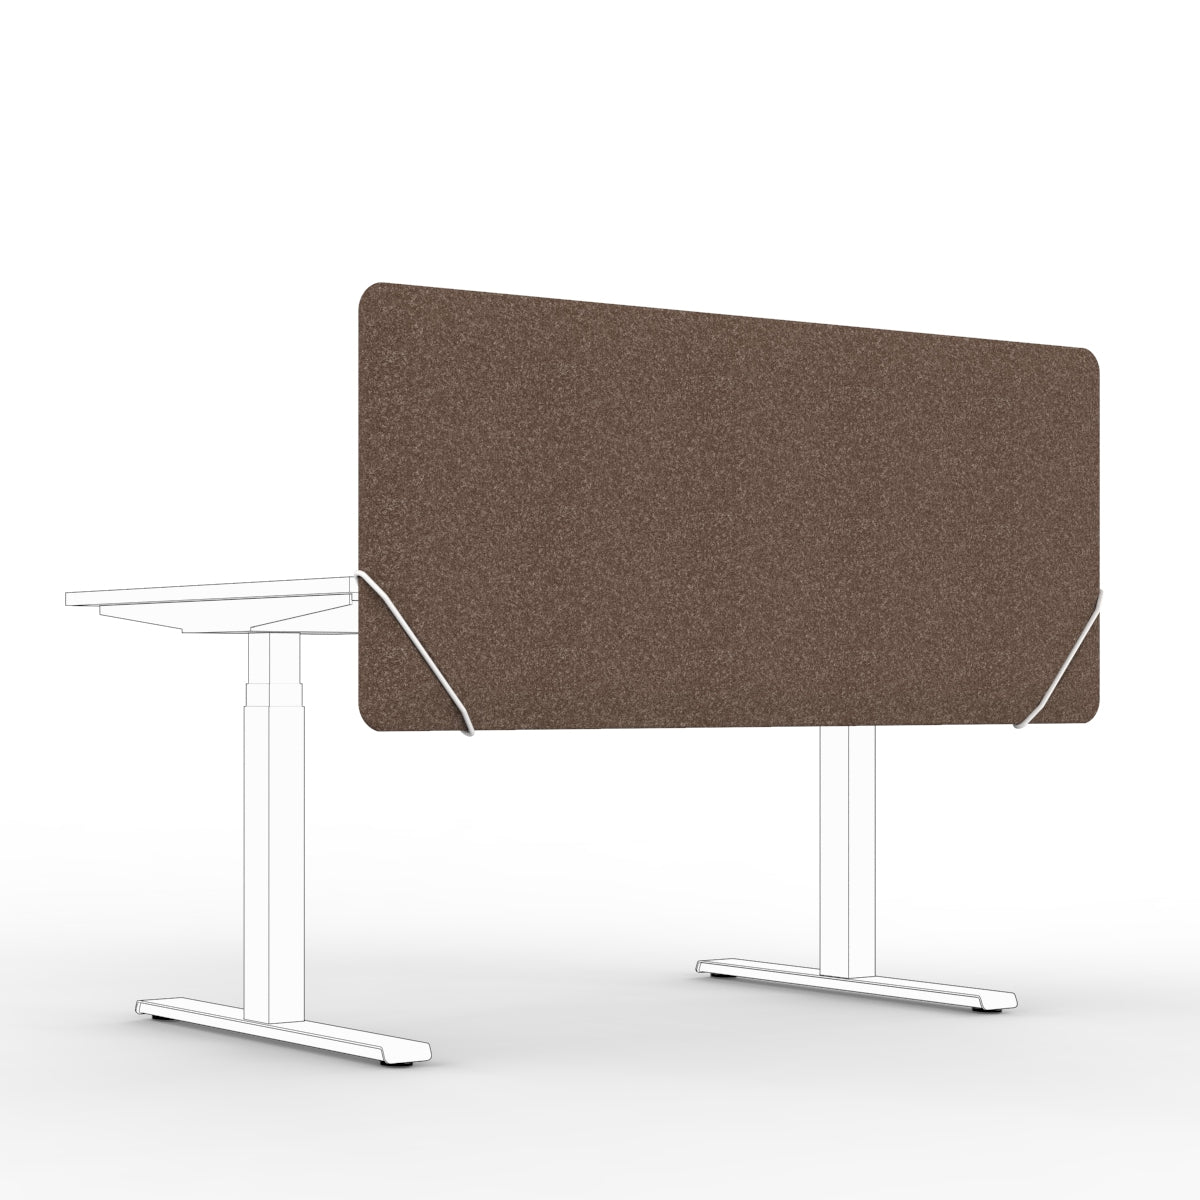 Sound absorbing table divider in brown felt with white slide on table mounts. Bordskjerm for skrivebord. Avskjerming og lyddemping på kontor